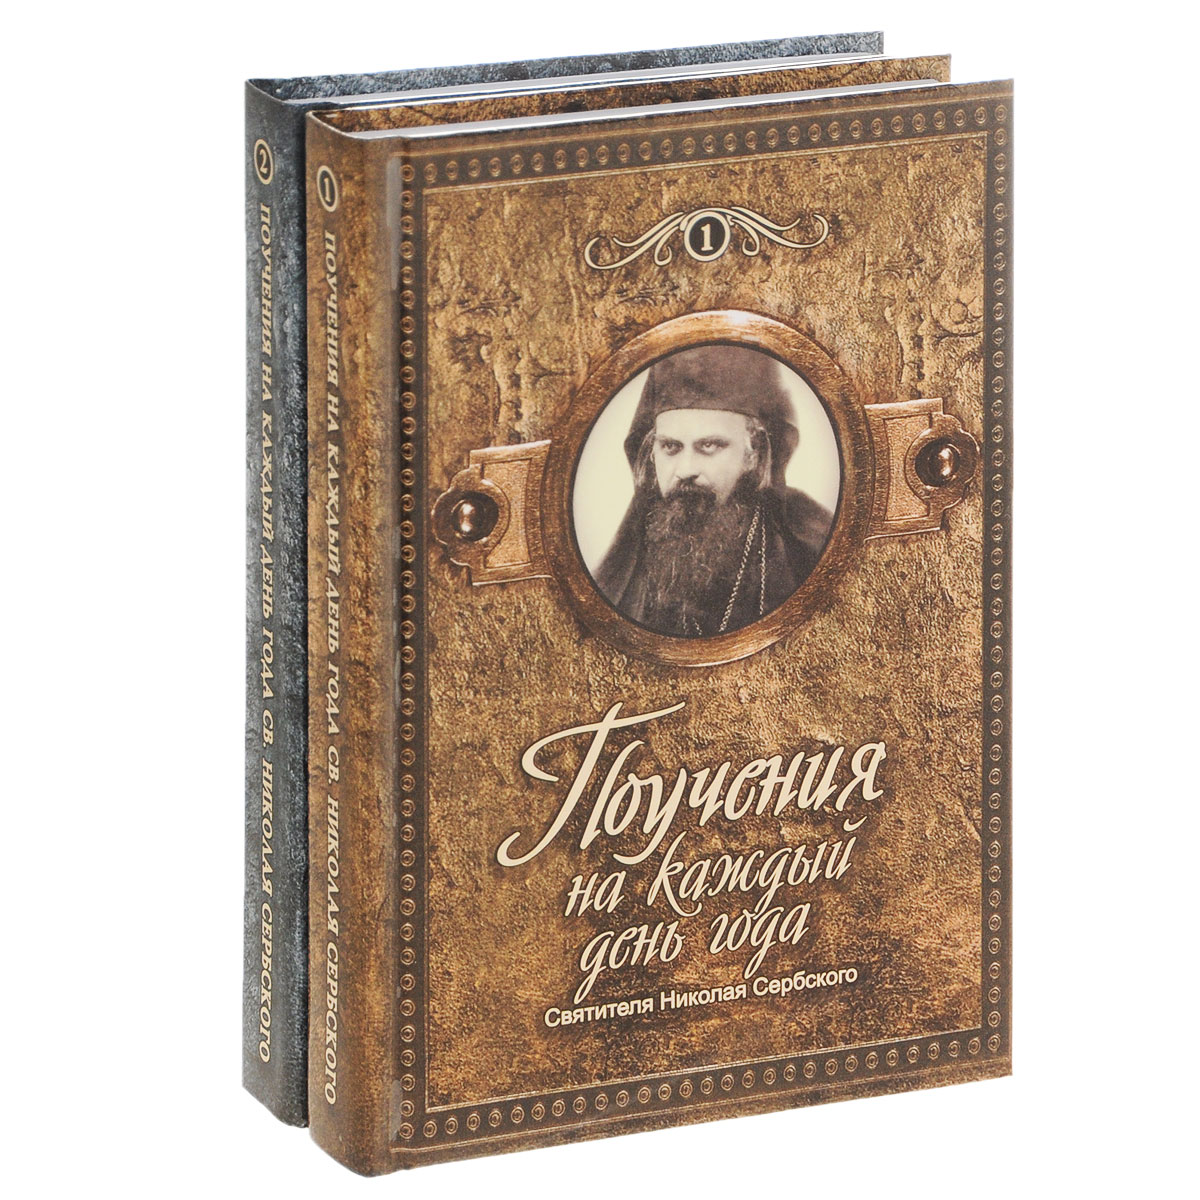 Поучения на каждый день года святителя Николая Сербского (комплект из 2 книг)